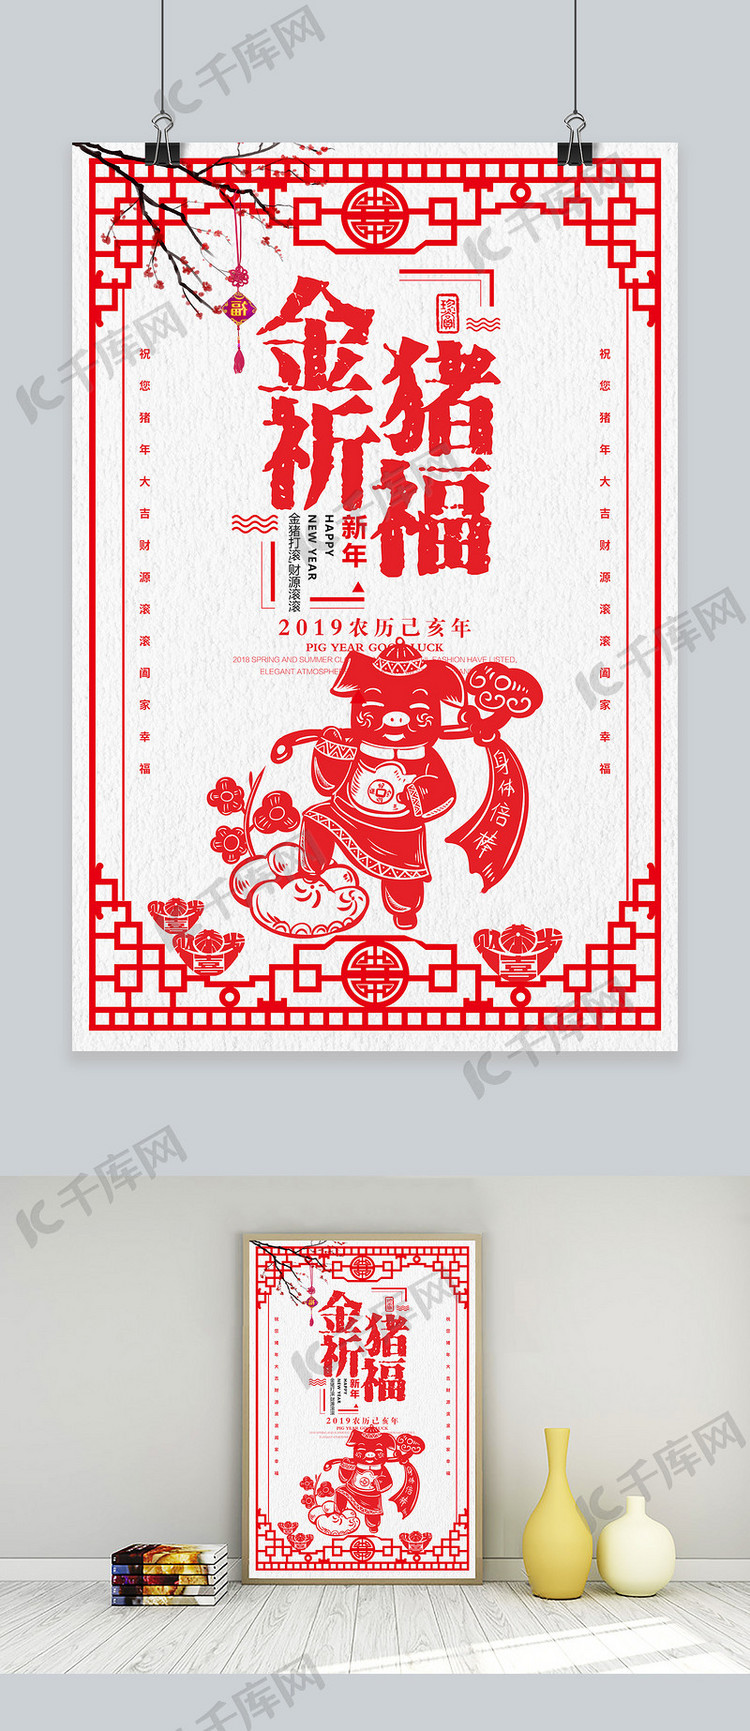 中国传统剪纸2019年金猪祈福海报